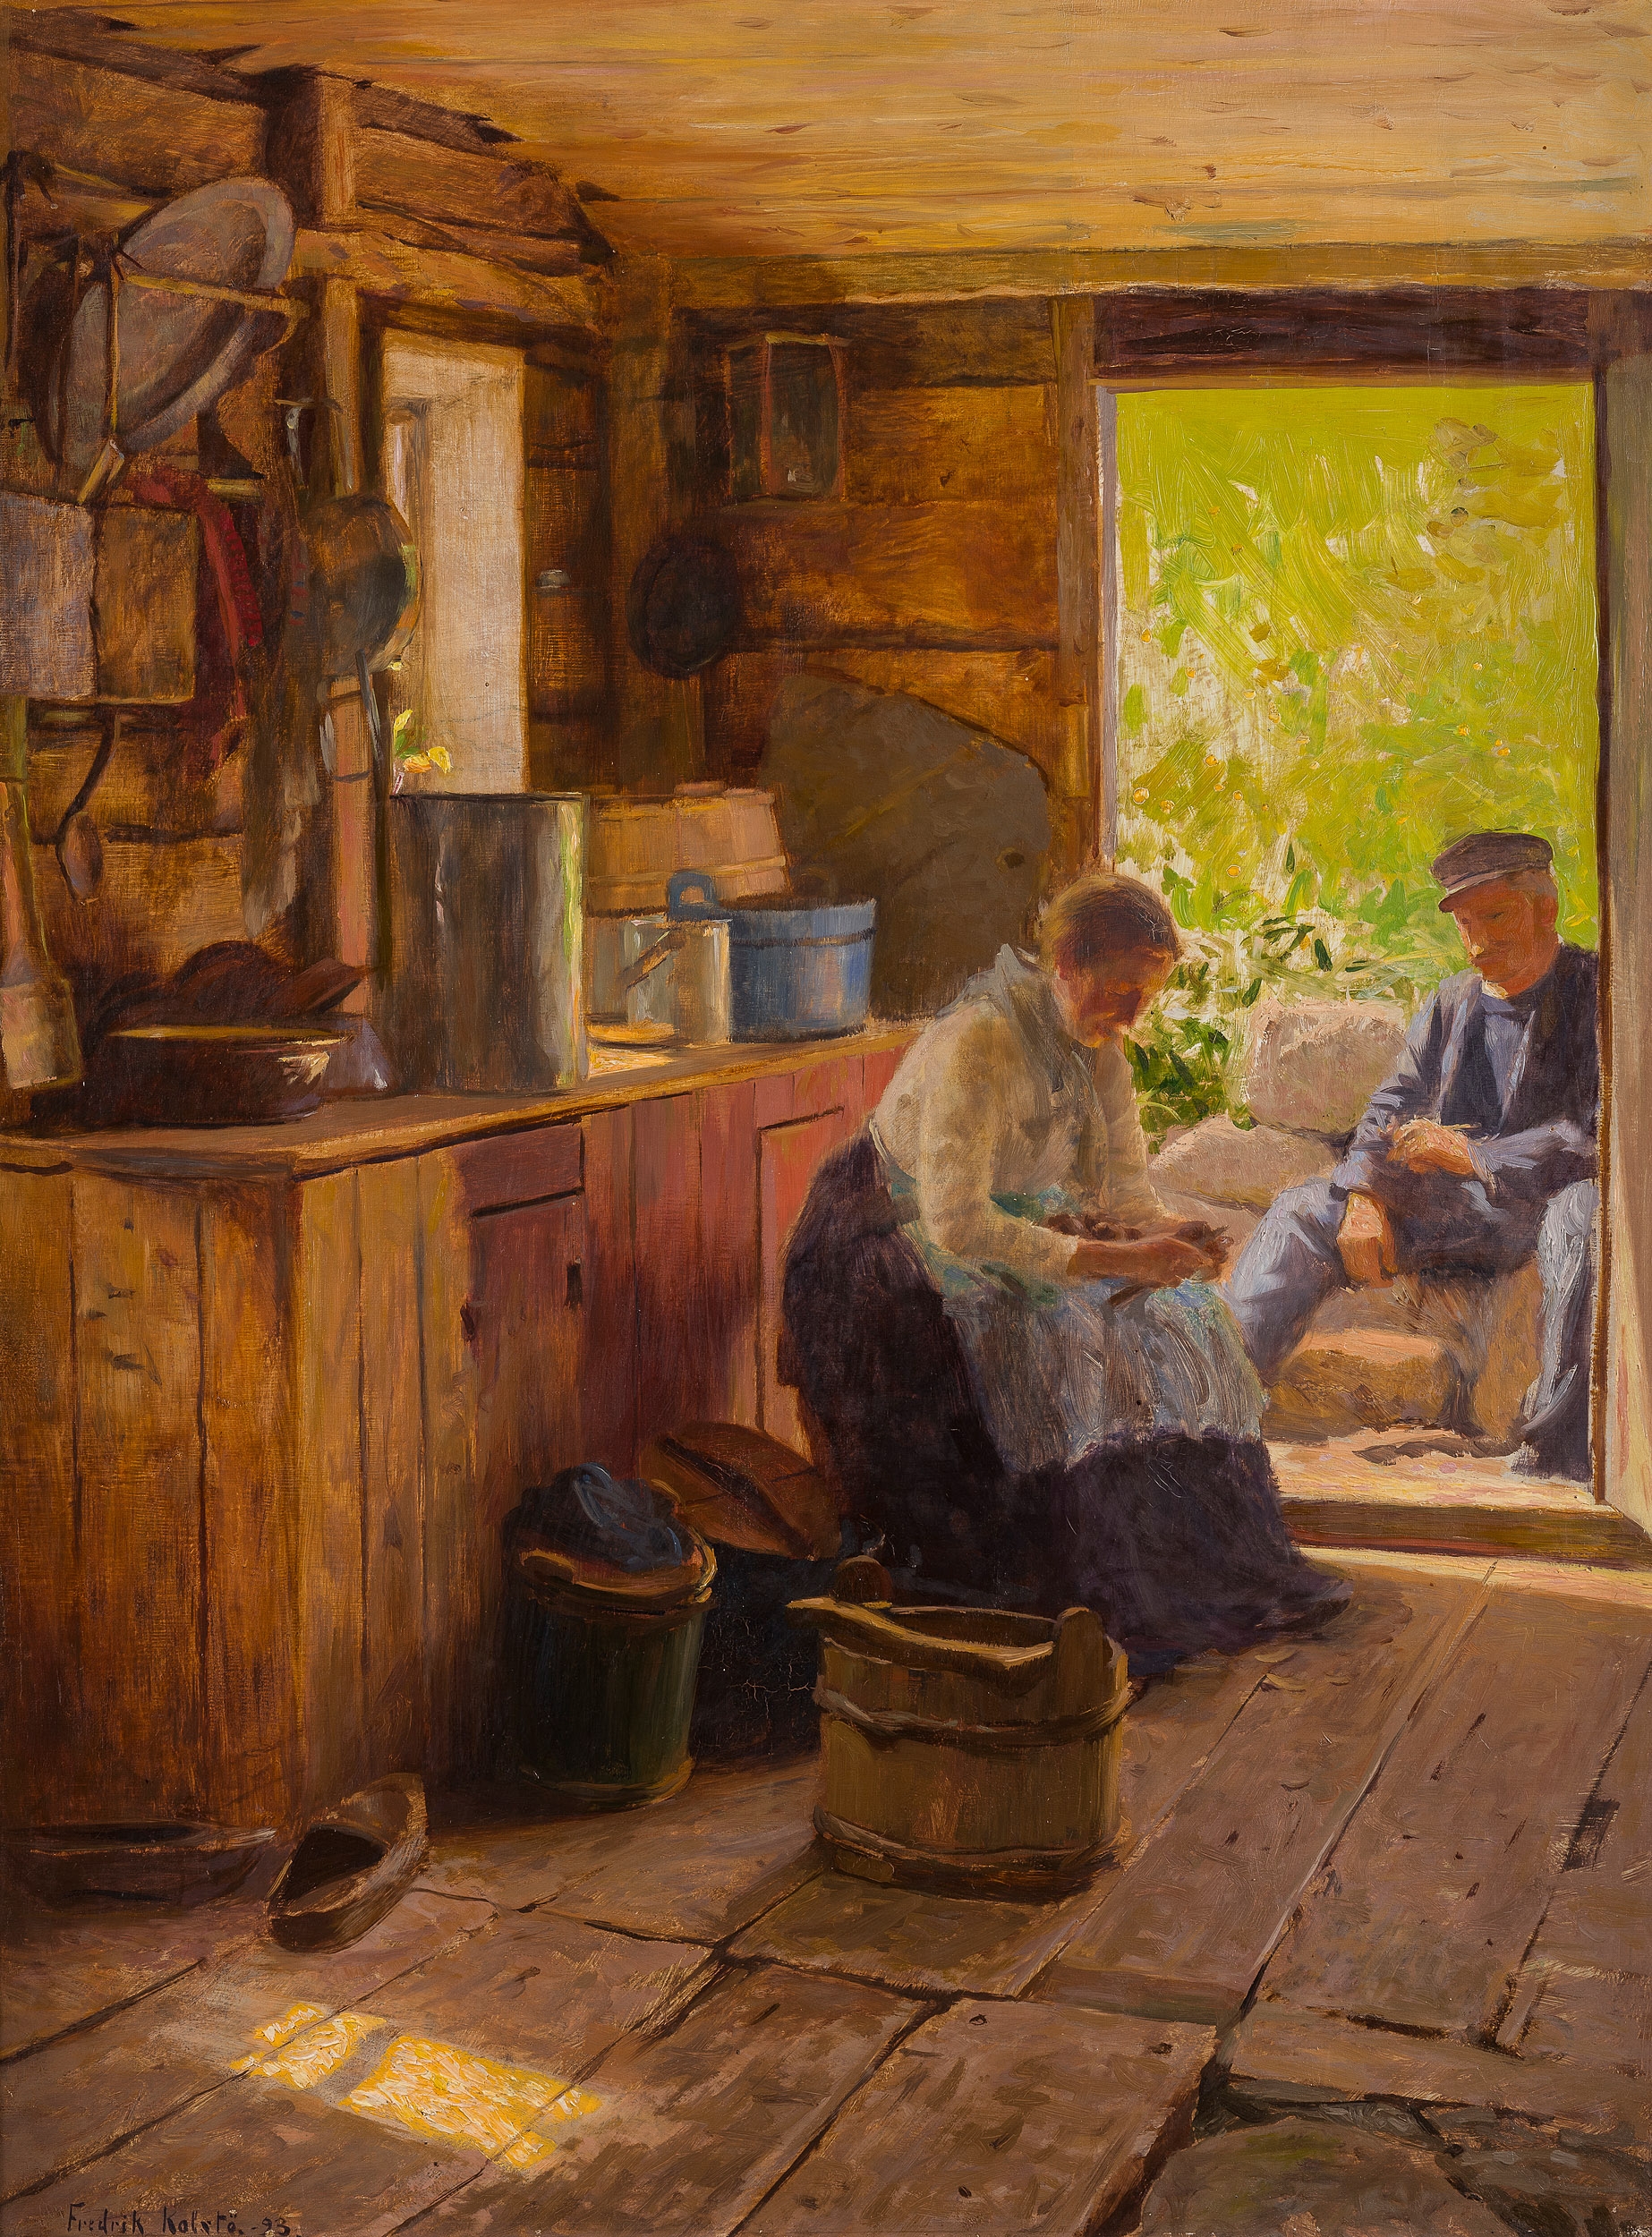 I døråpningen by Fredrik Kolstø, 1893